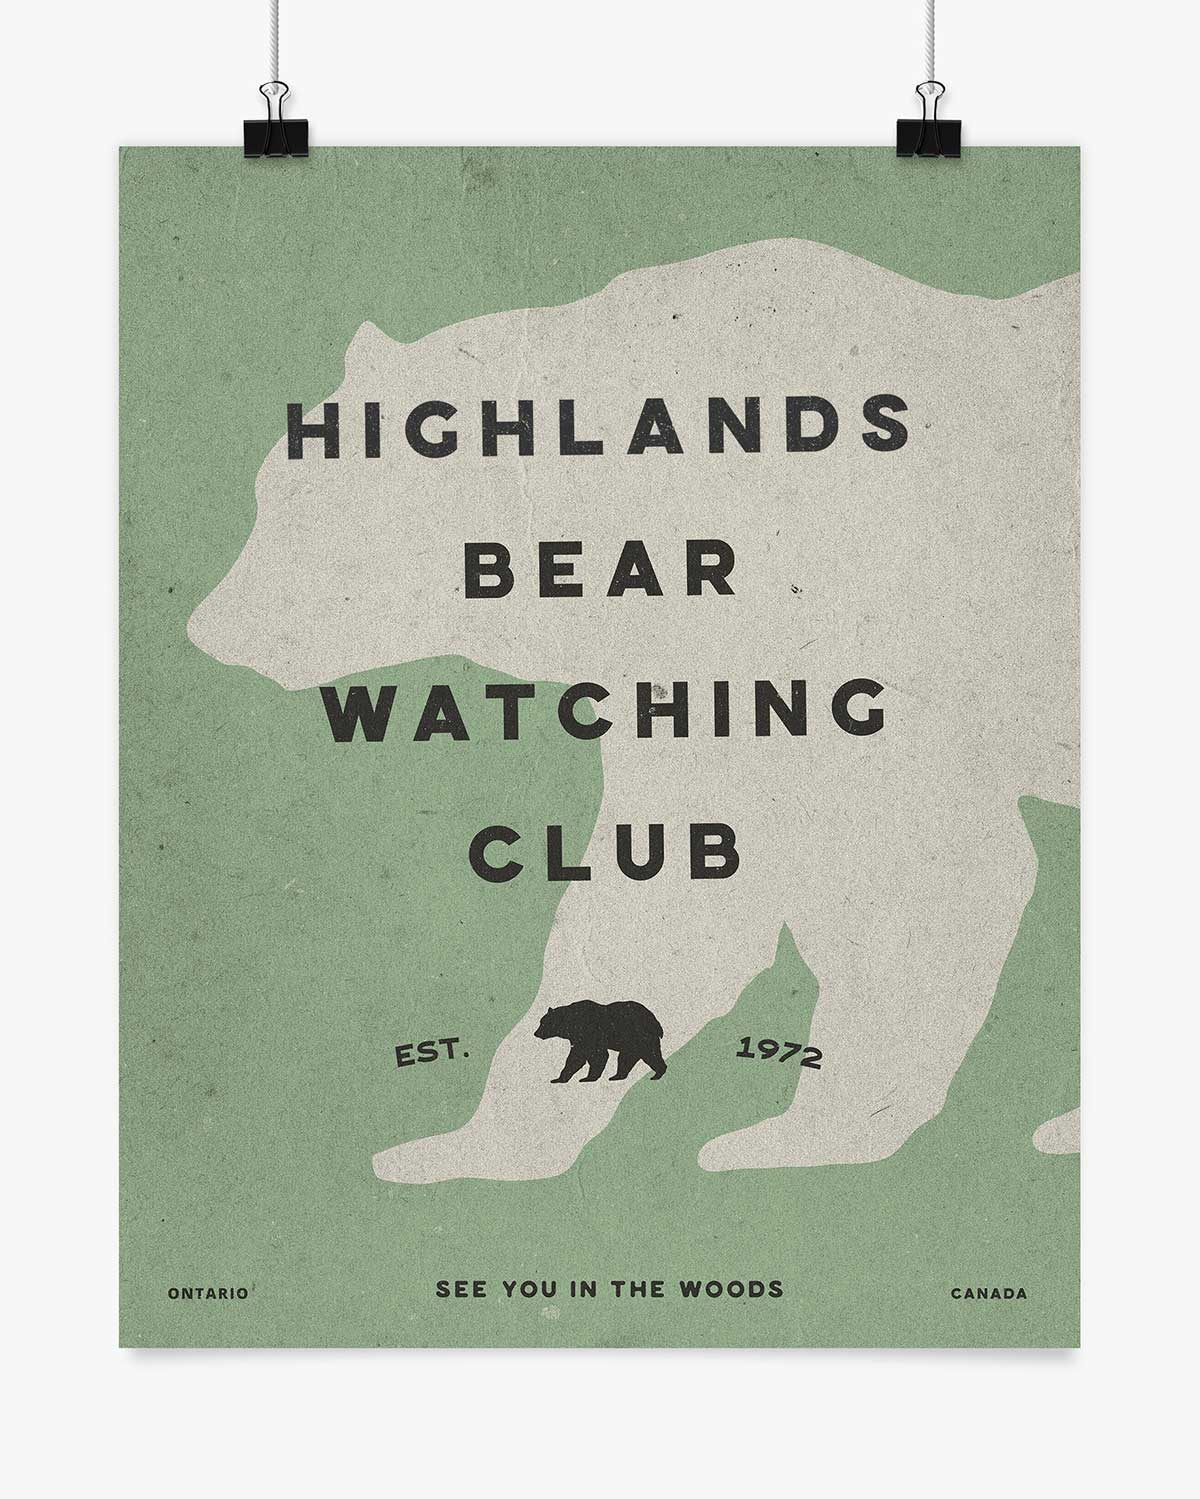 Bear Watching Club - Highlands - Wall Art